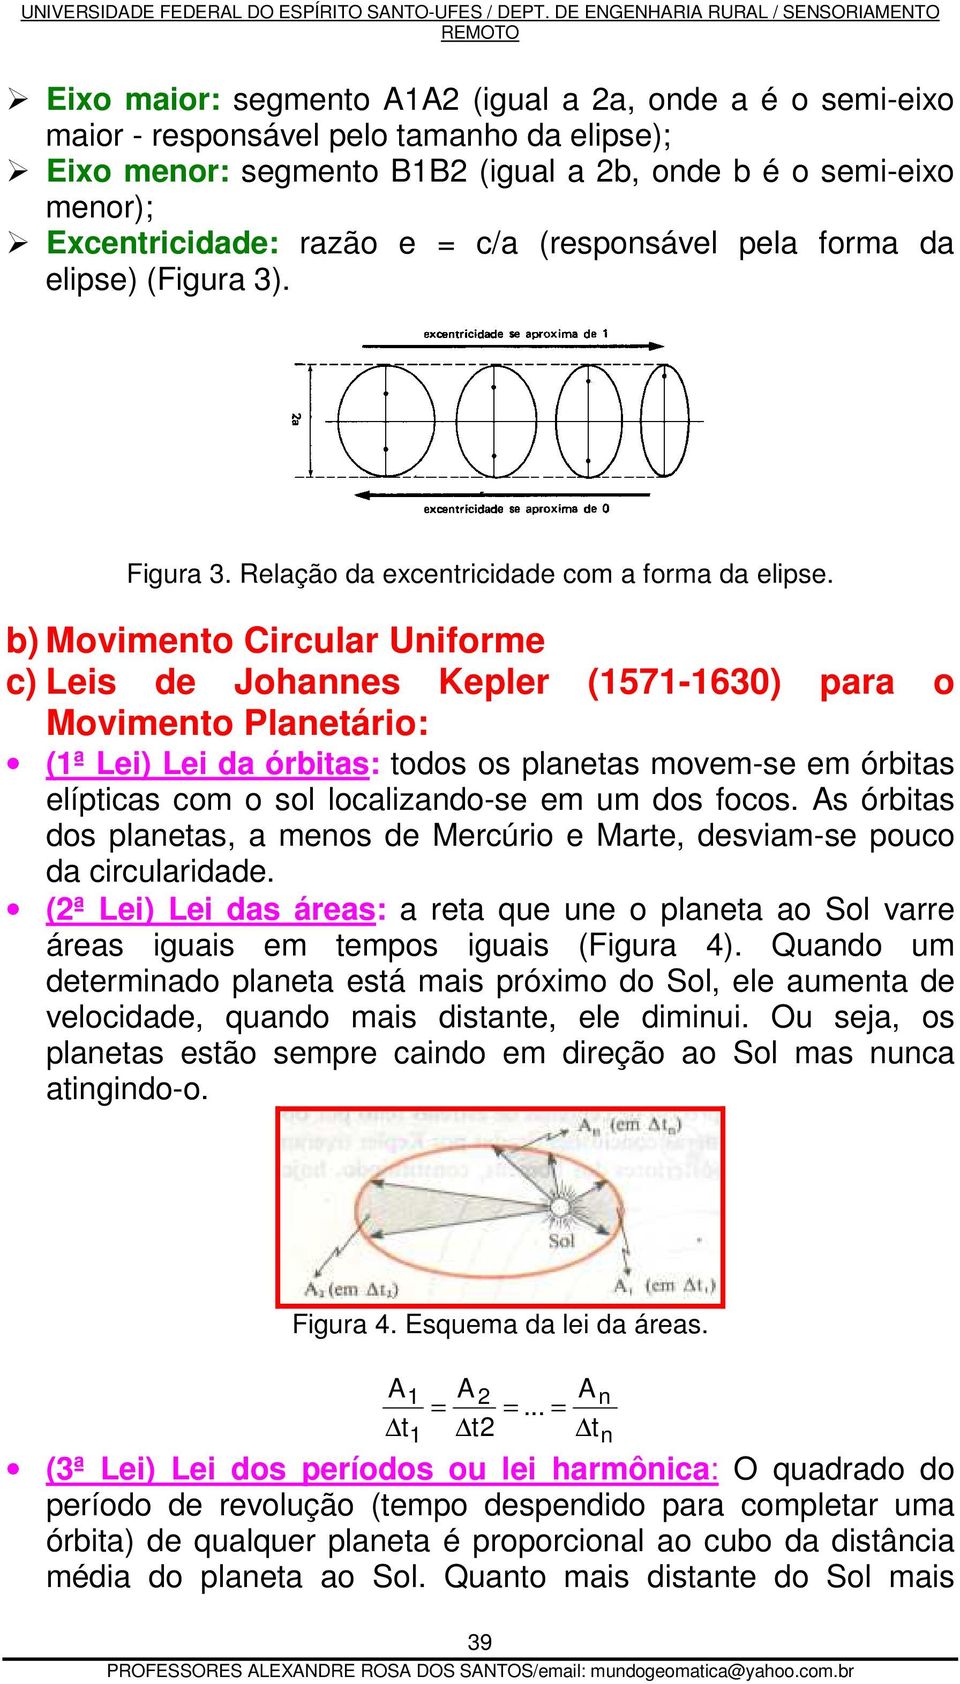 b) Movimento Circular Uniforme c) Leis de Johannes Kepler (1571-1630) para o Movimento Planetário: (1ª Lei) Lei da órbitas: todos os planetas movem-se em órbitas elípticas com o sol localizando-se em